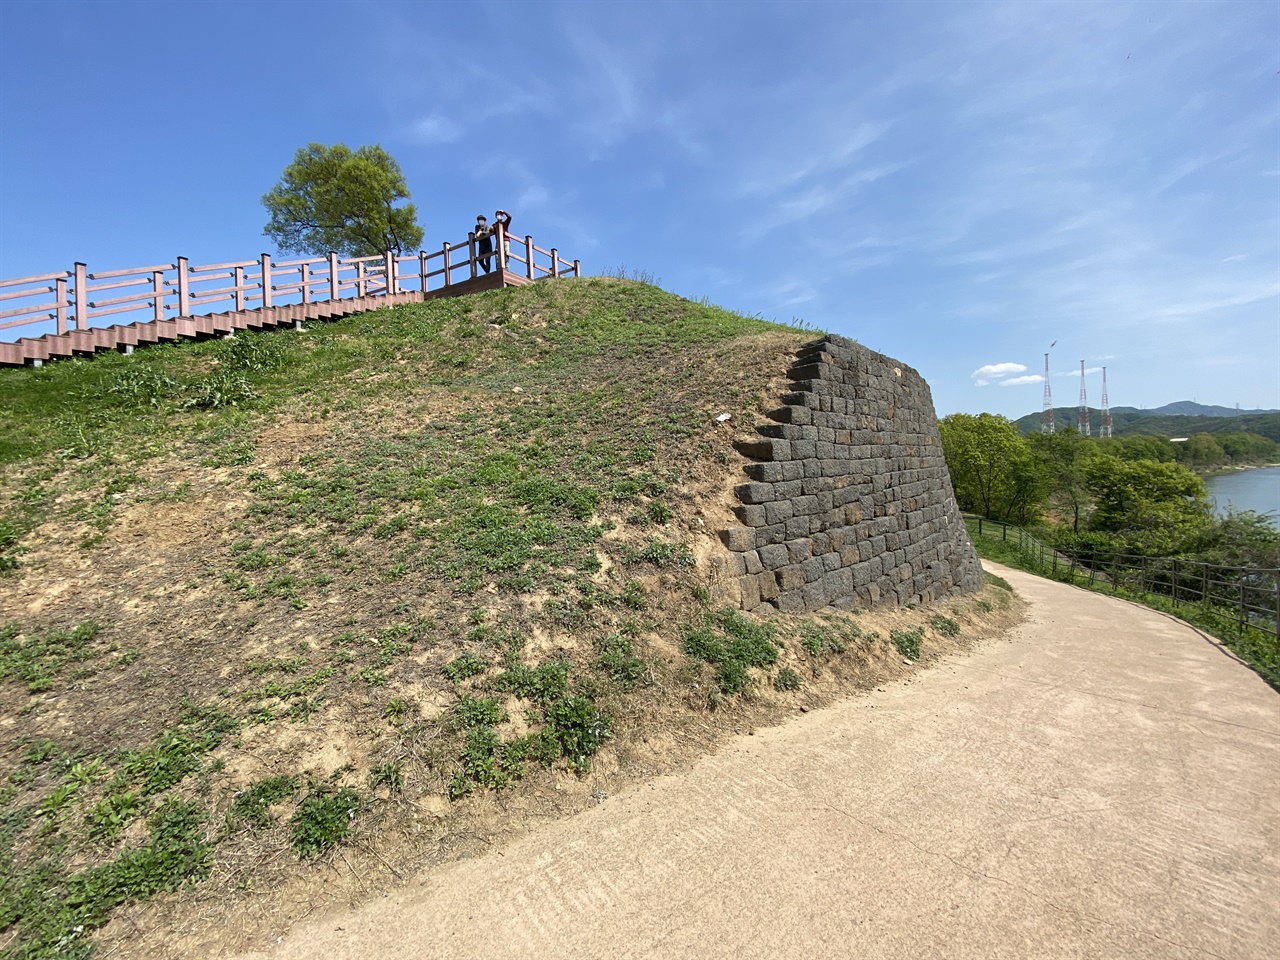 석축으로 만들어진 동벽이 이 곳이 성이었음을 증명하고 있다